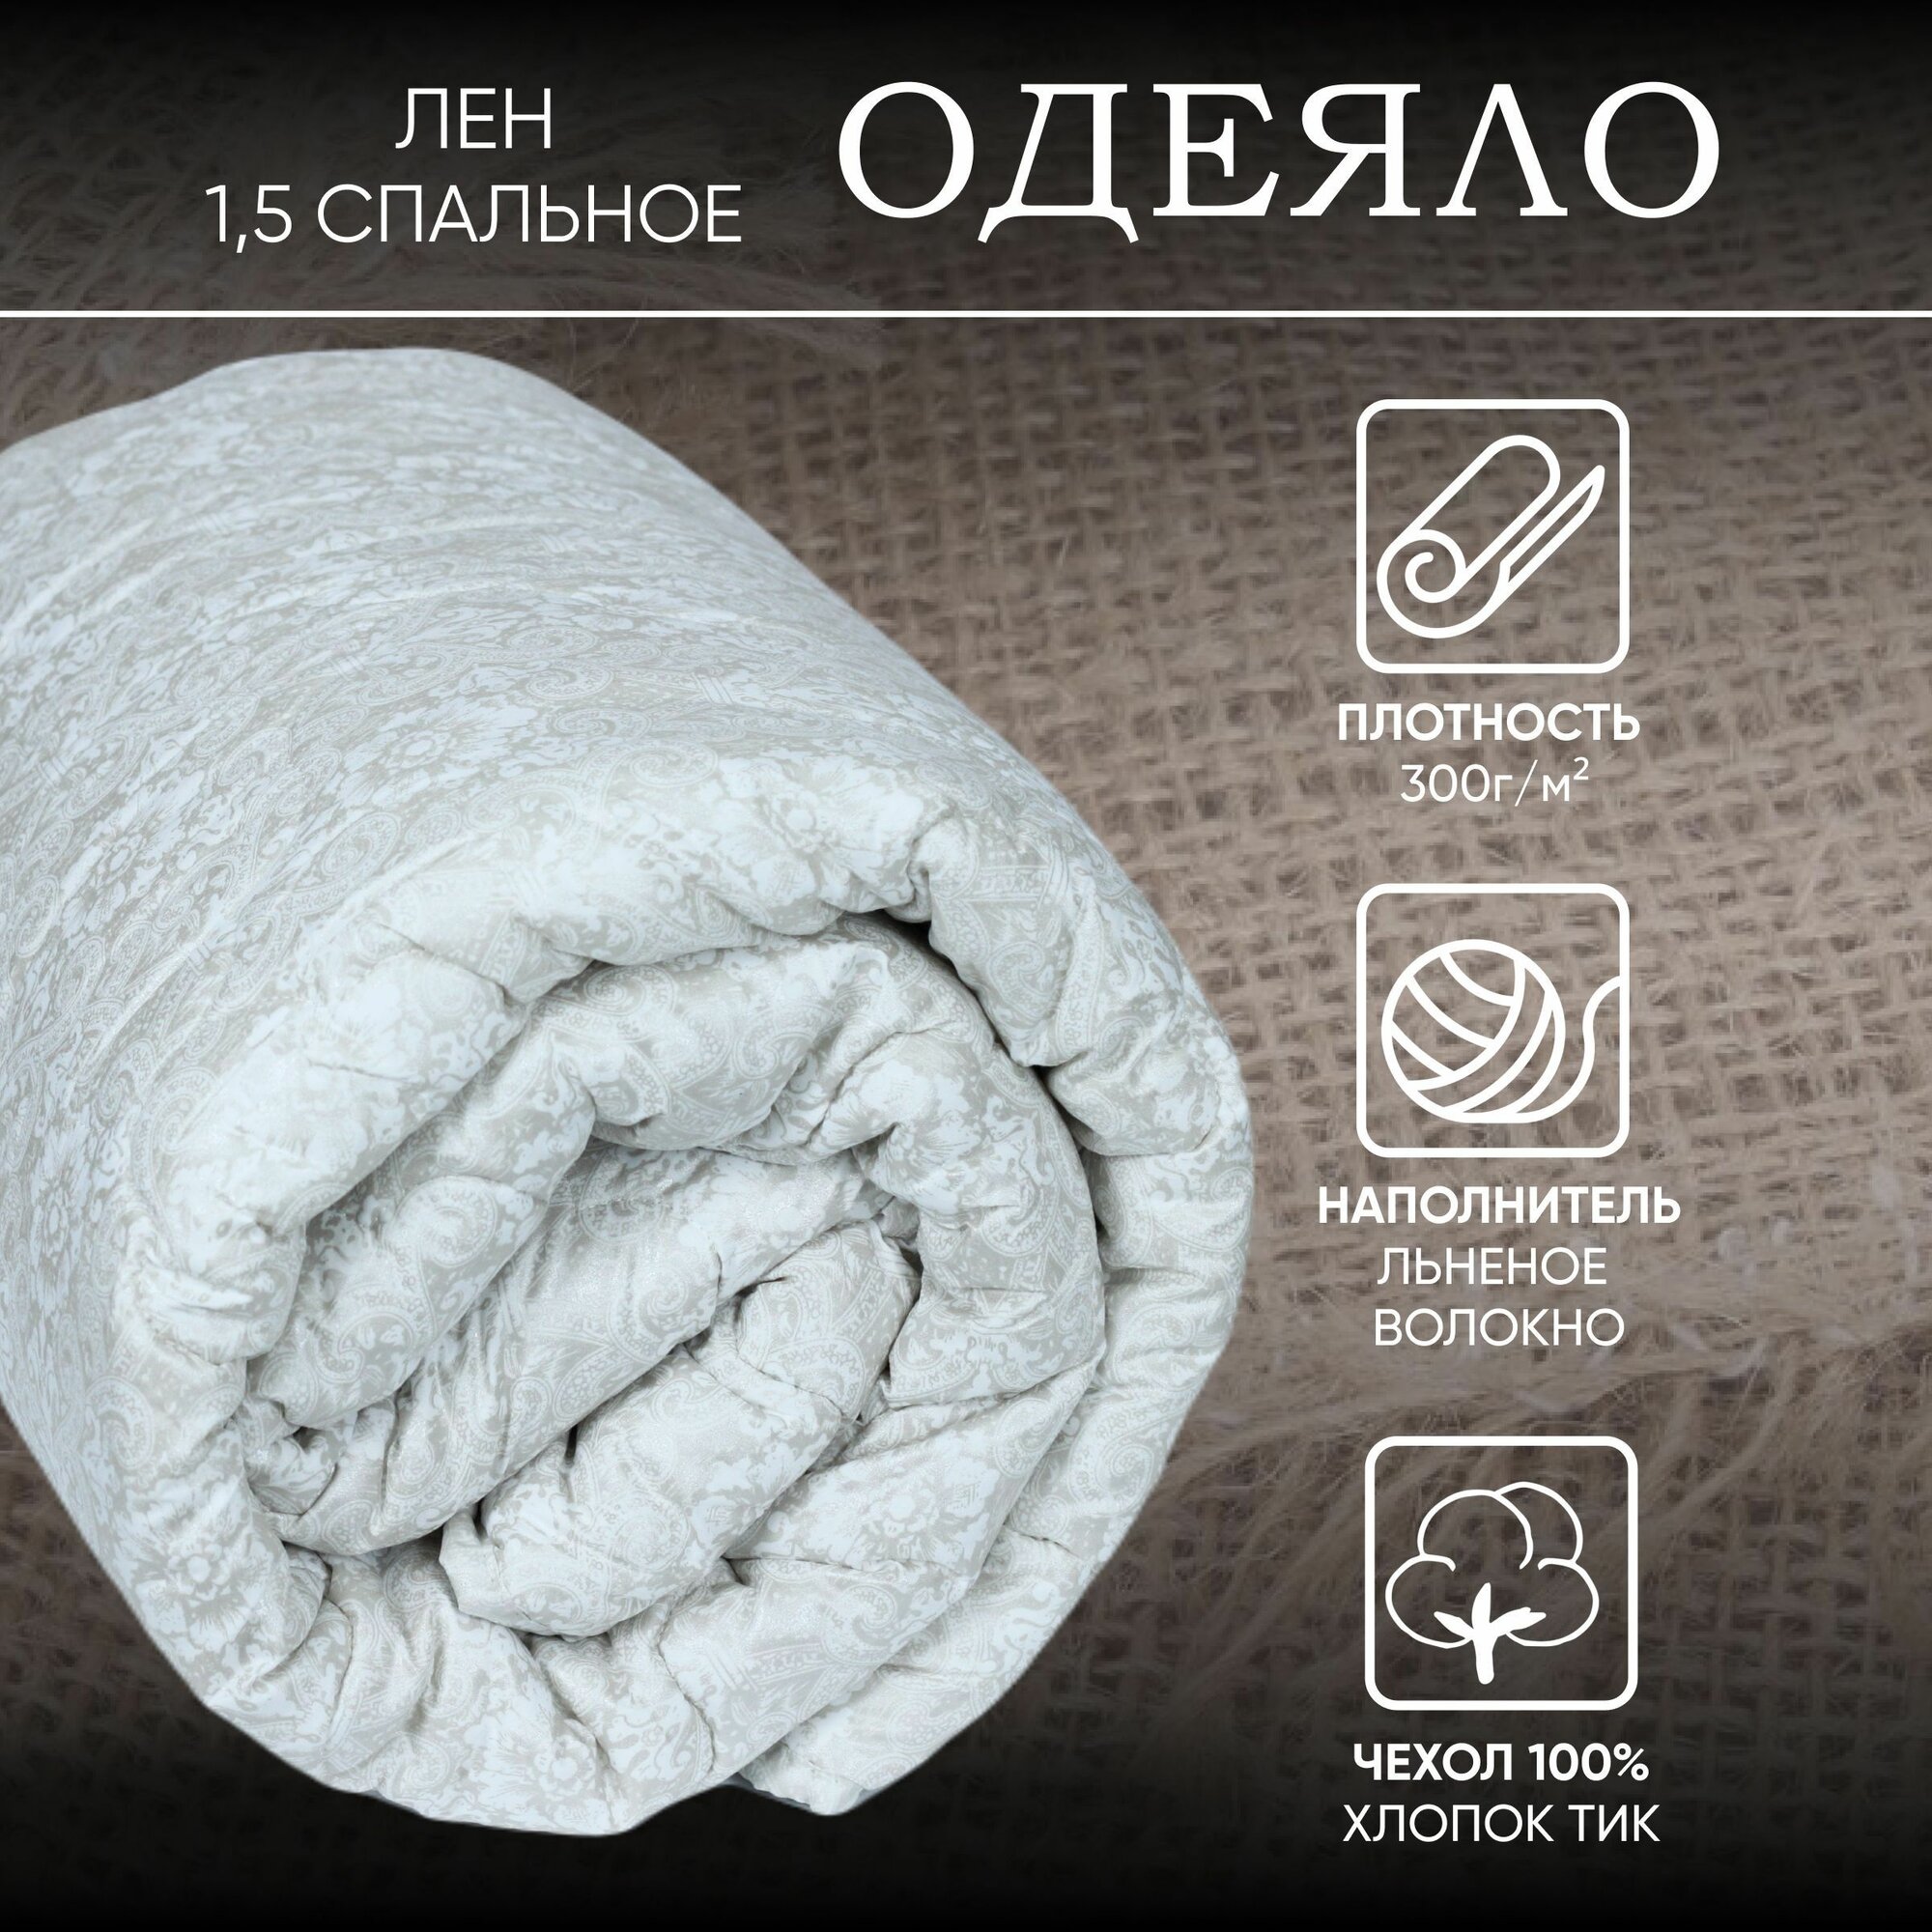 Одеяло 1 5 спальное всесезонное Льняное волокно / Стеганое одеяло для сна / Ивановский текстиль